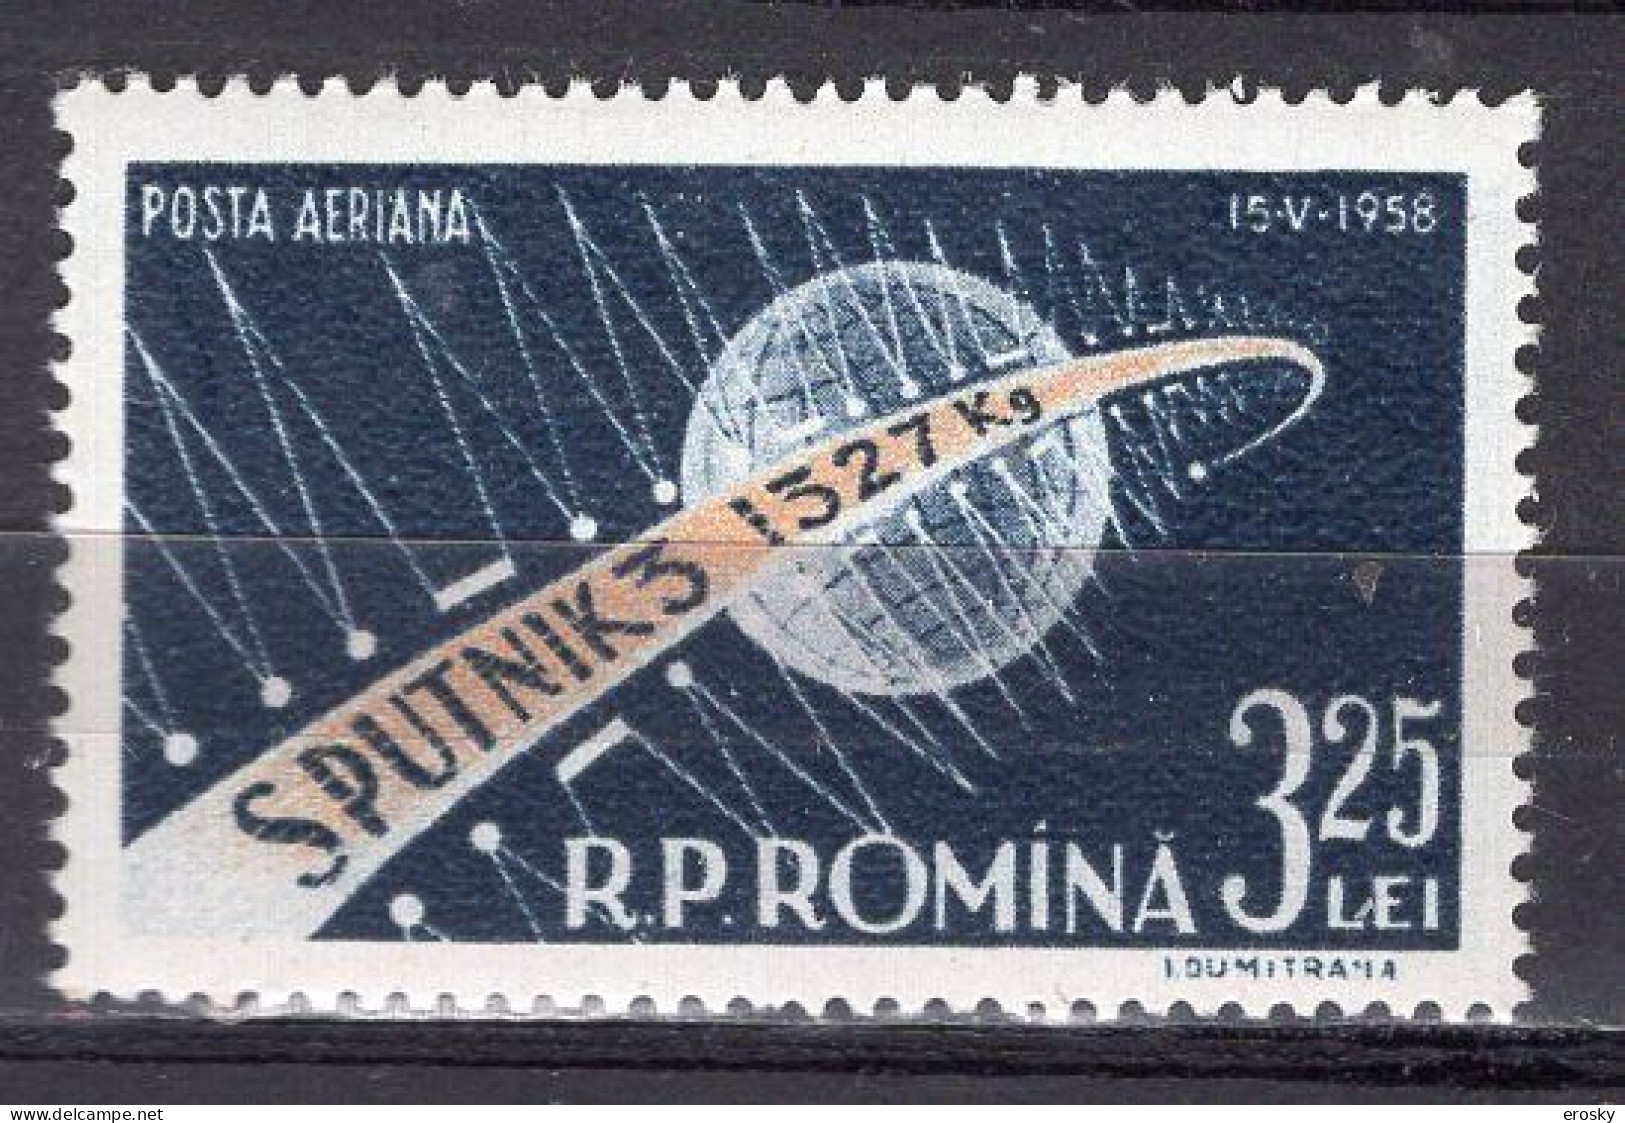 S2505 - ROMANIA ROUMANIE AERIENNE Yv N°87 ** ESPACE SPACE - Nuovi